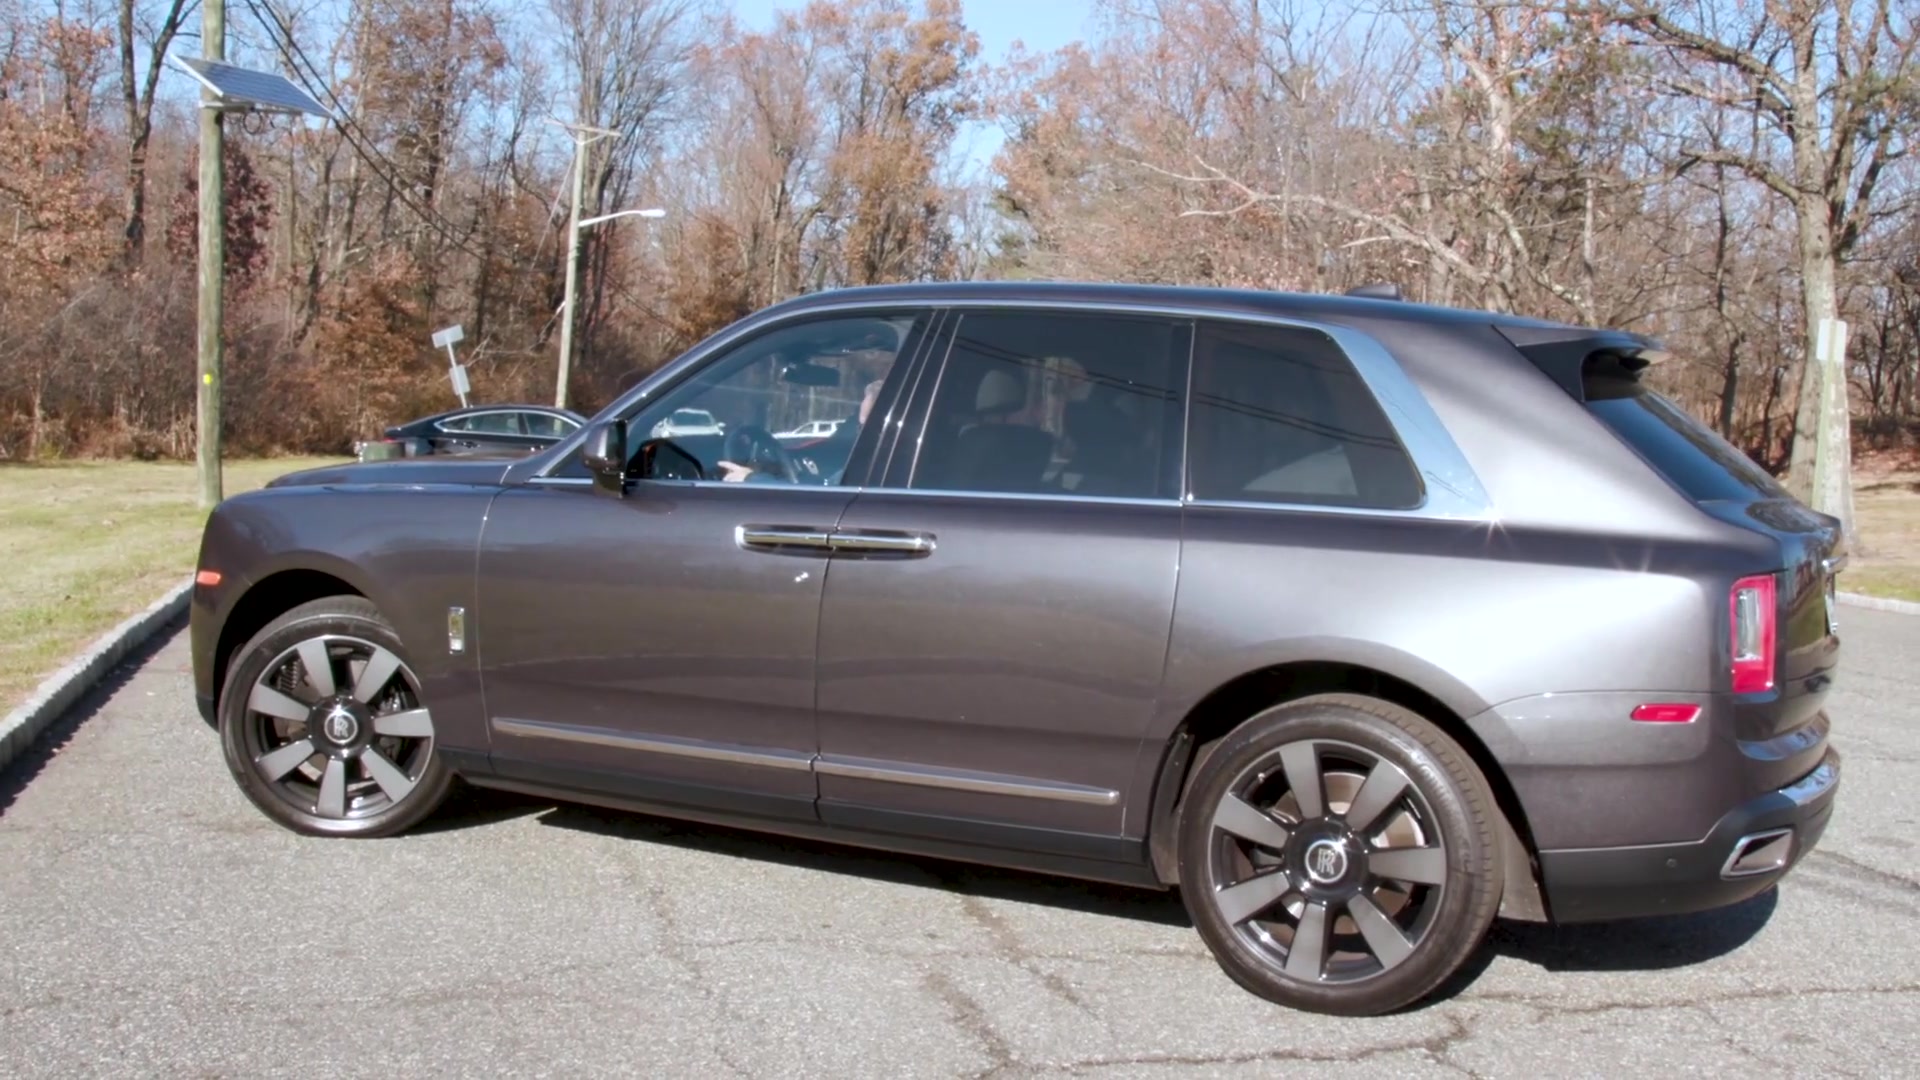 What It's Like Inside Rolls-Royce's $410,000 Luxury SUV